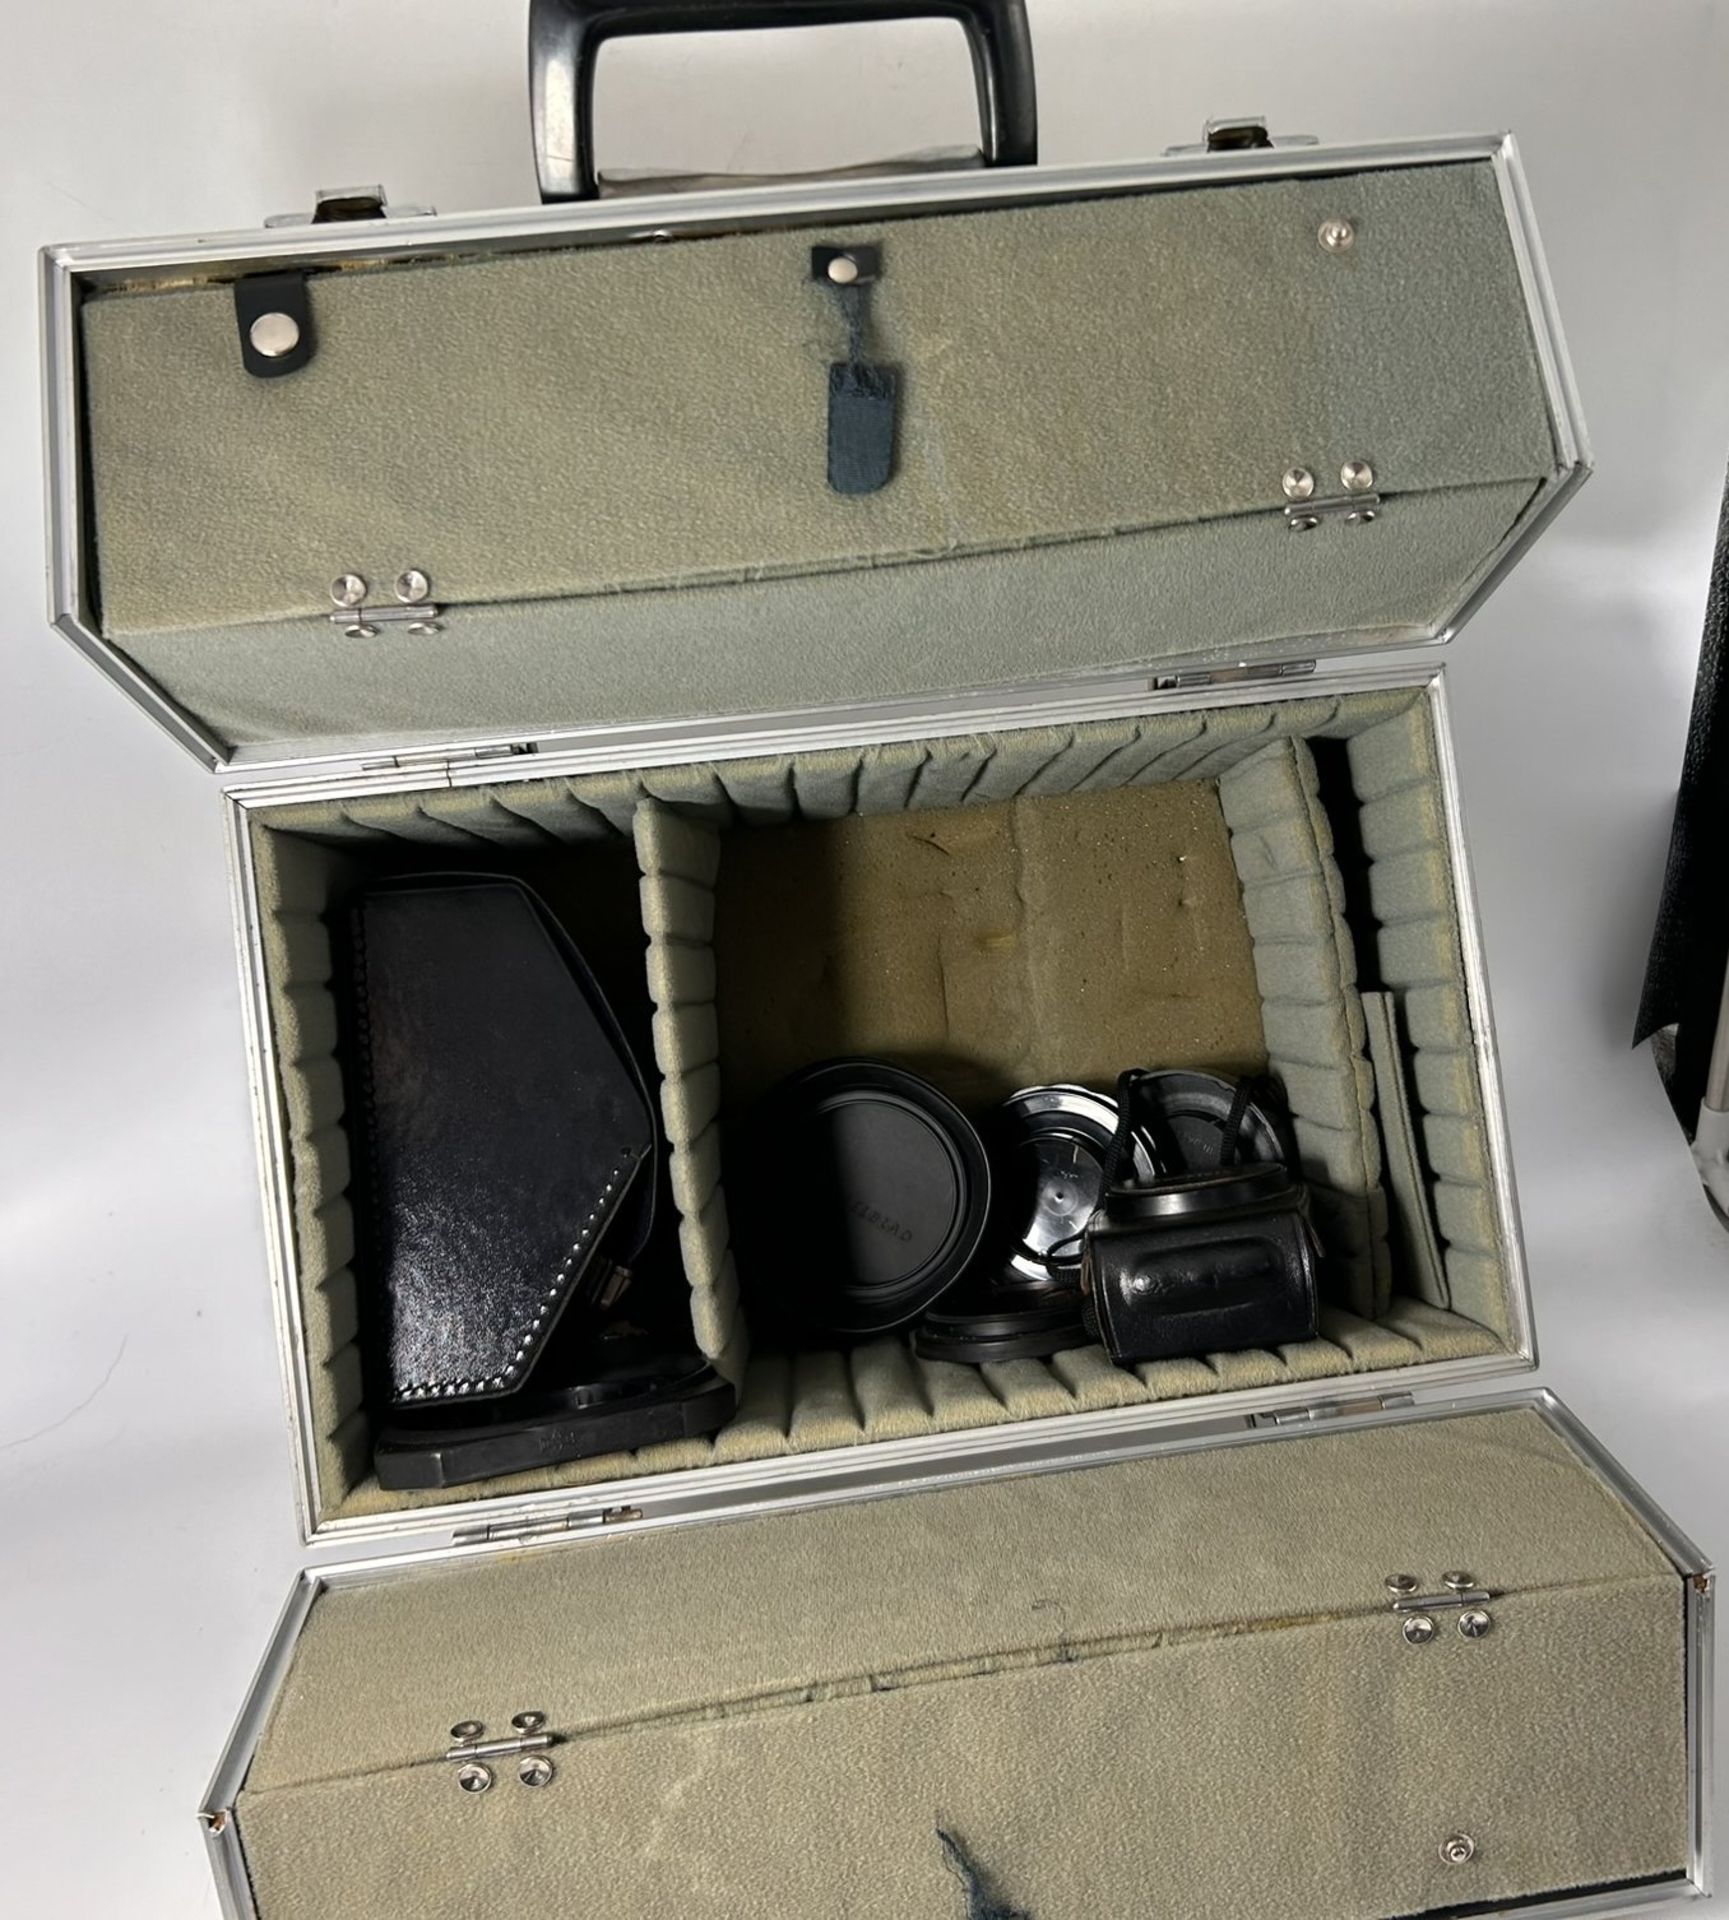 analoge  Profi Kamera "Mamya RB 67 S pro" in Alukoffer,3 Objektive , Wechsel-Filmbehälter und viel  - Bild 6 aus 17